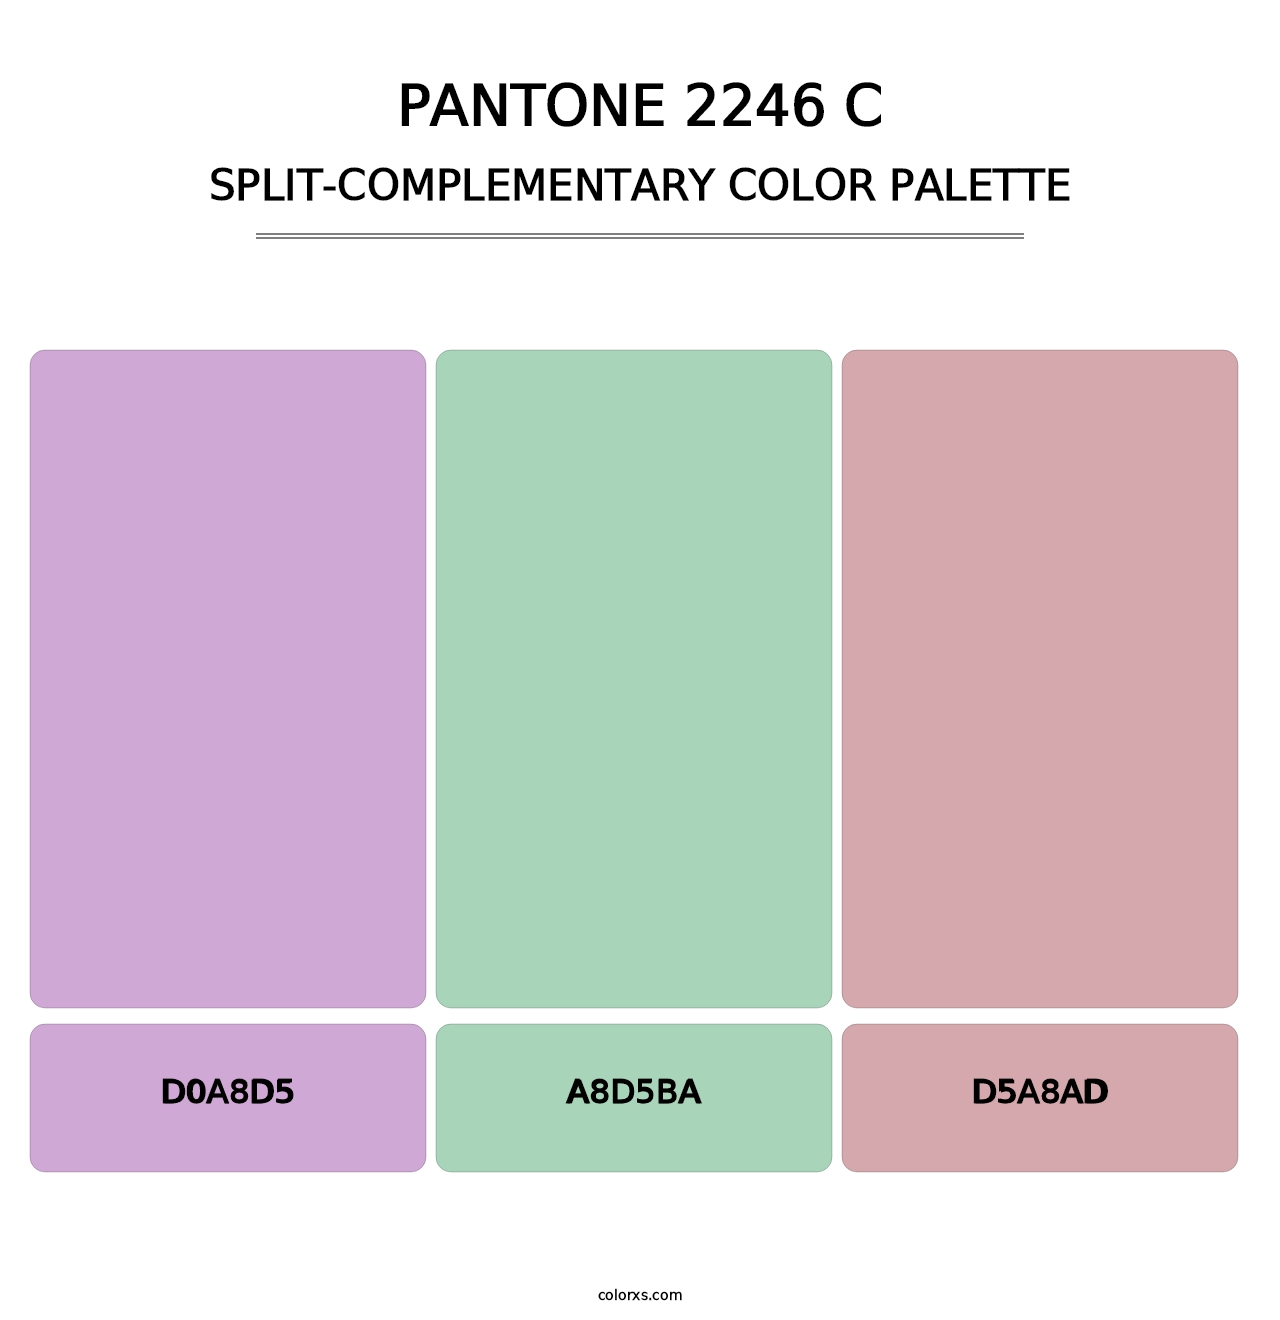 PANTONE 2246 C - Split-Complementary Color Palette